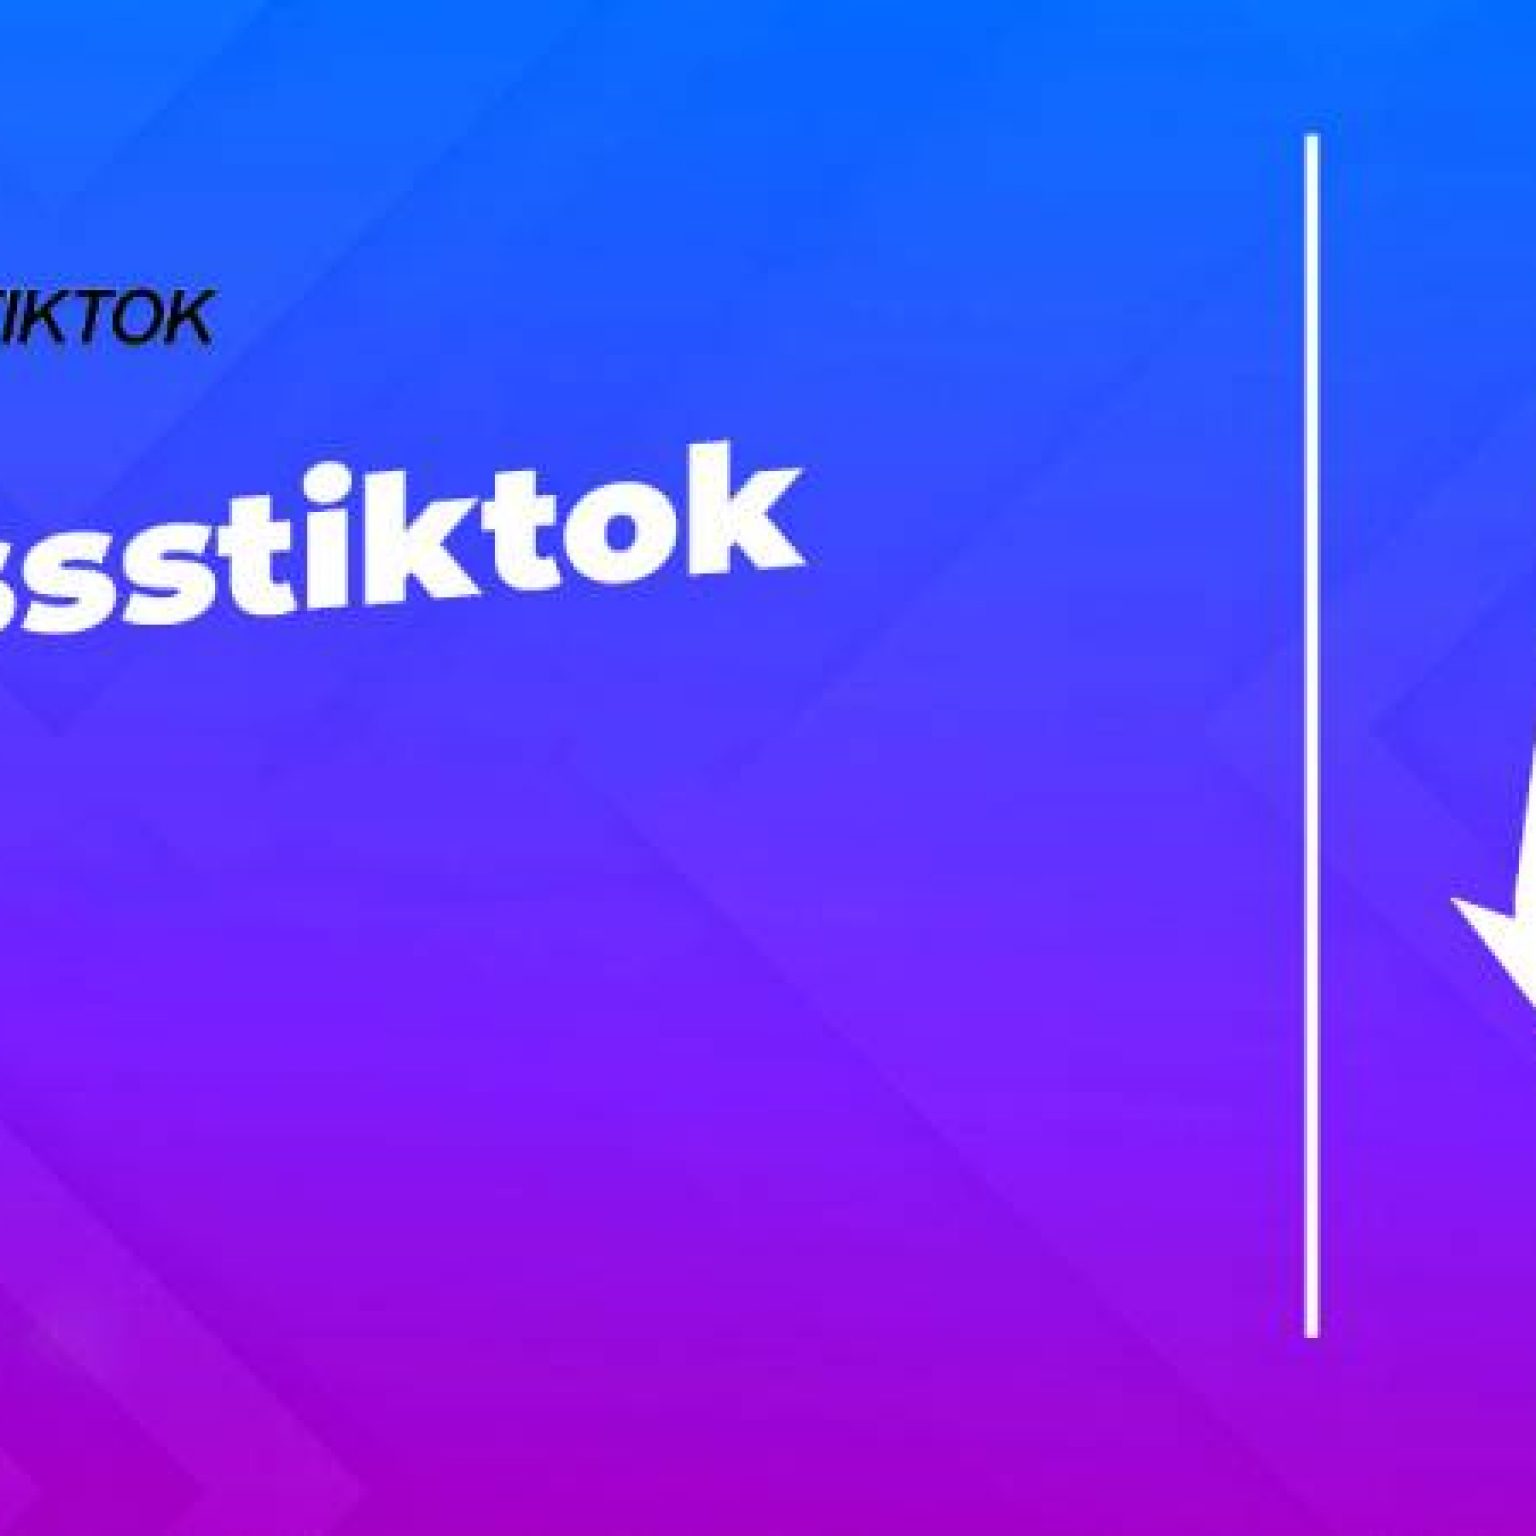 O que é Ssstiktok?  Tudo o que você precisa antes de usá-lo